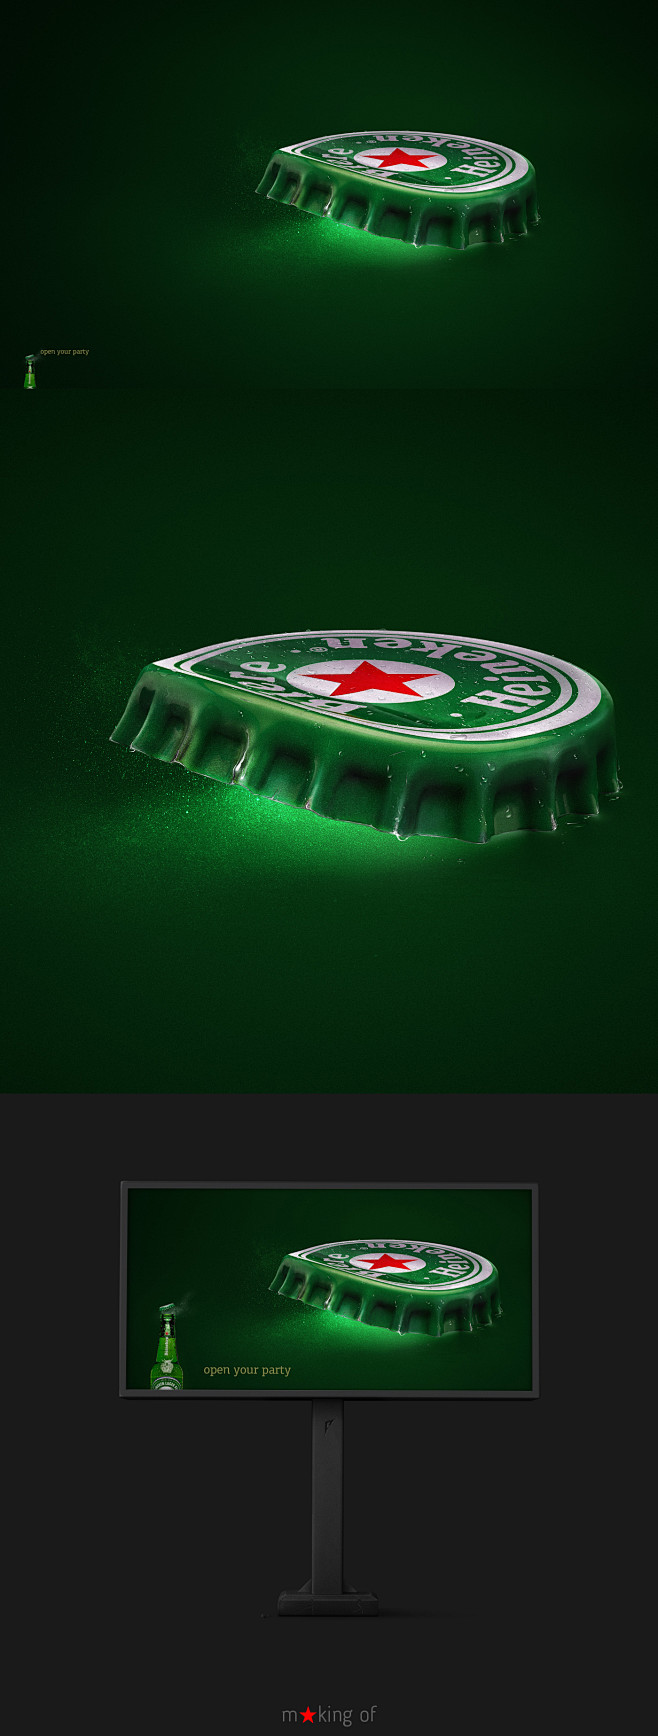 Heineken | Open your...